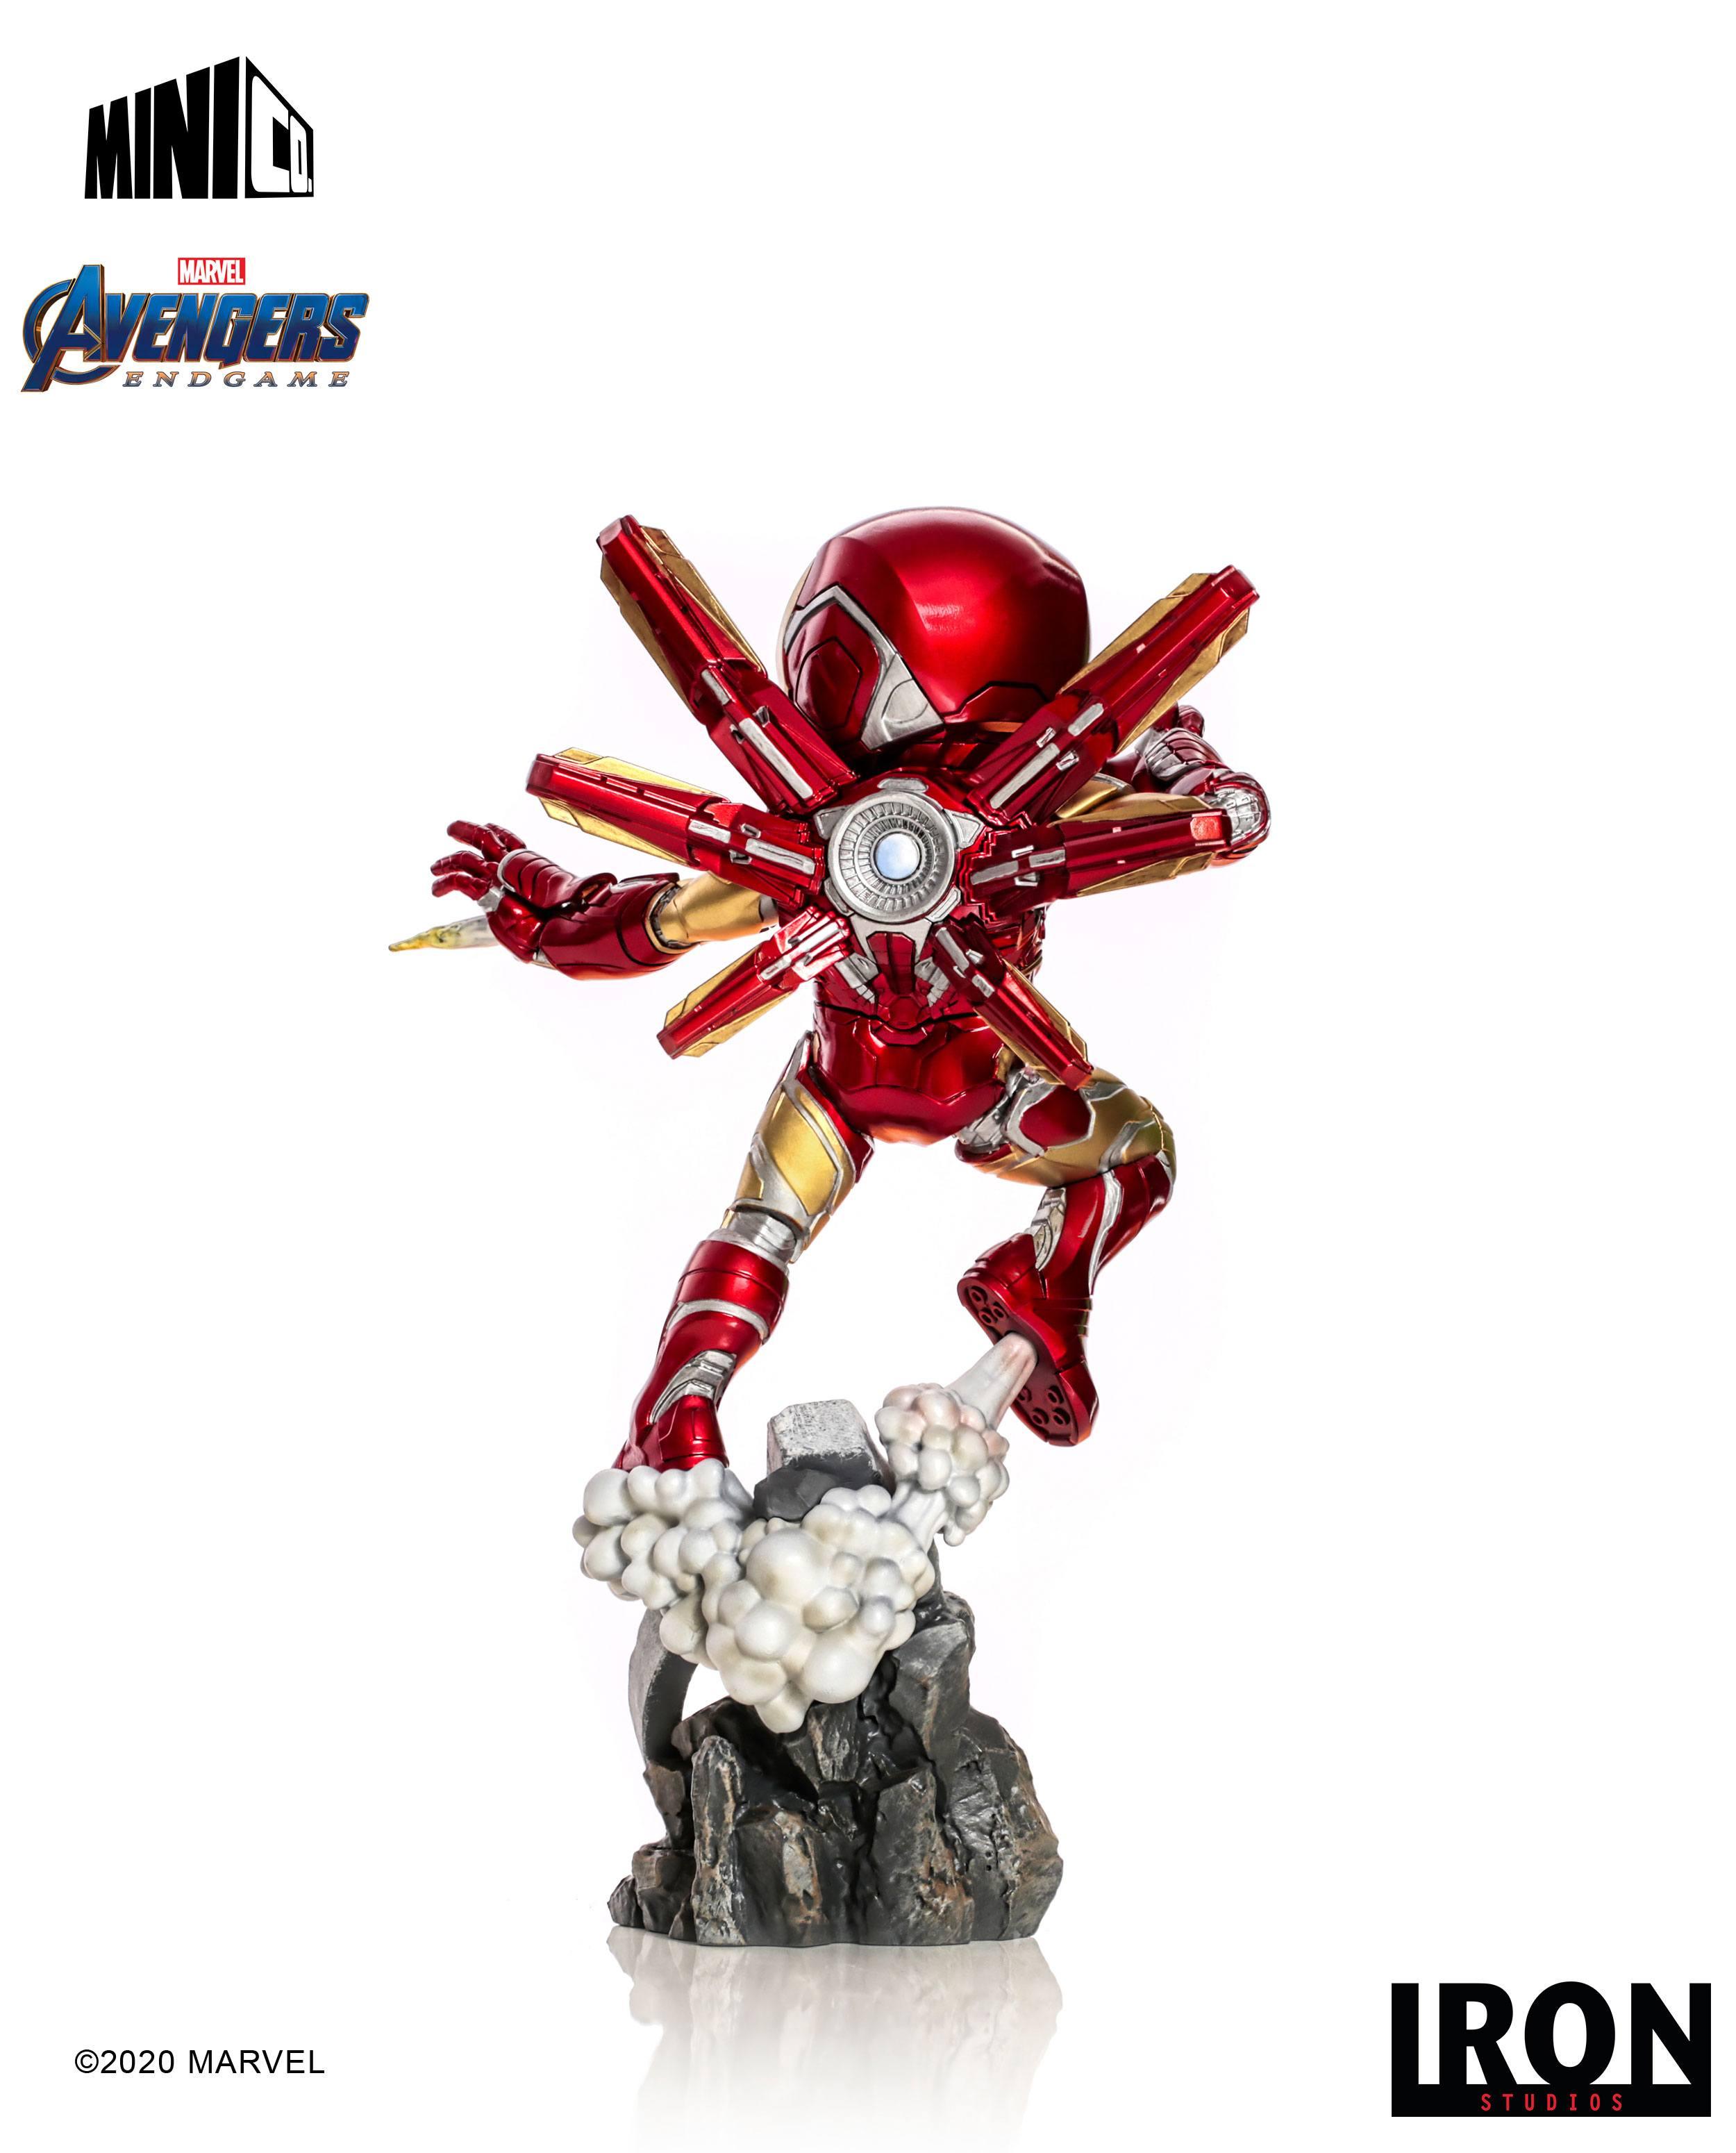 Avengers Endgame Mini Co. PVC Figure Iron Man 20 cm 0736532715548